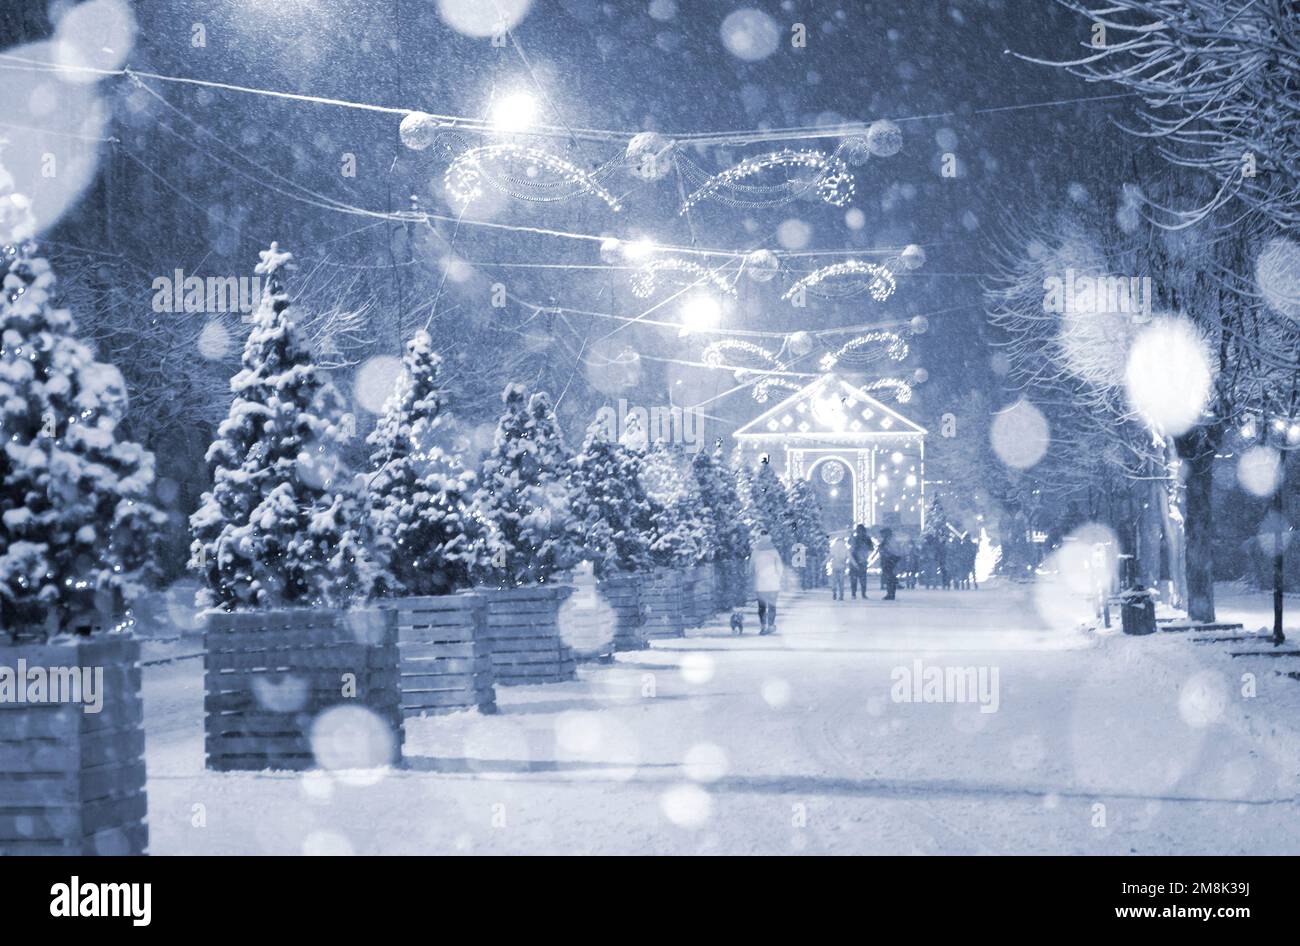 Rue de la ville pendant les chutes de neige pendant la nuit d'hiver. Beaucoup d'arbres de Noël décorés, éclairage, décoration sur la rue. Fête de Noël du nouvel an. Lanternes sur les arbres. Couleur bleue Banque D'Images